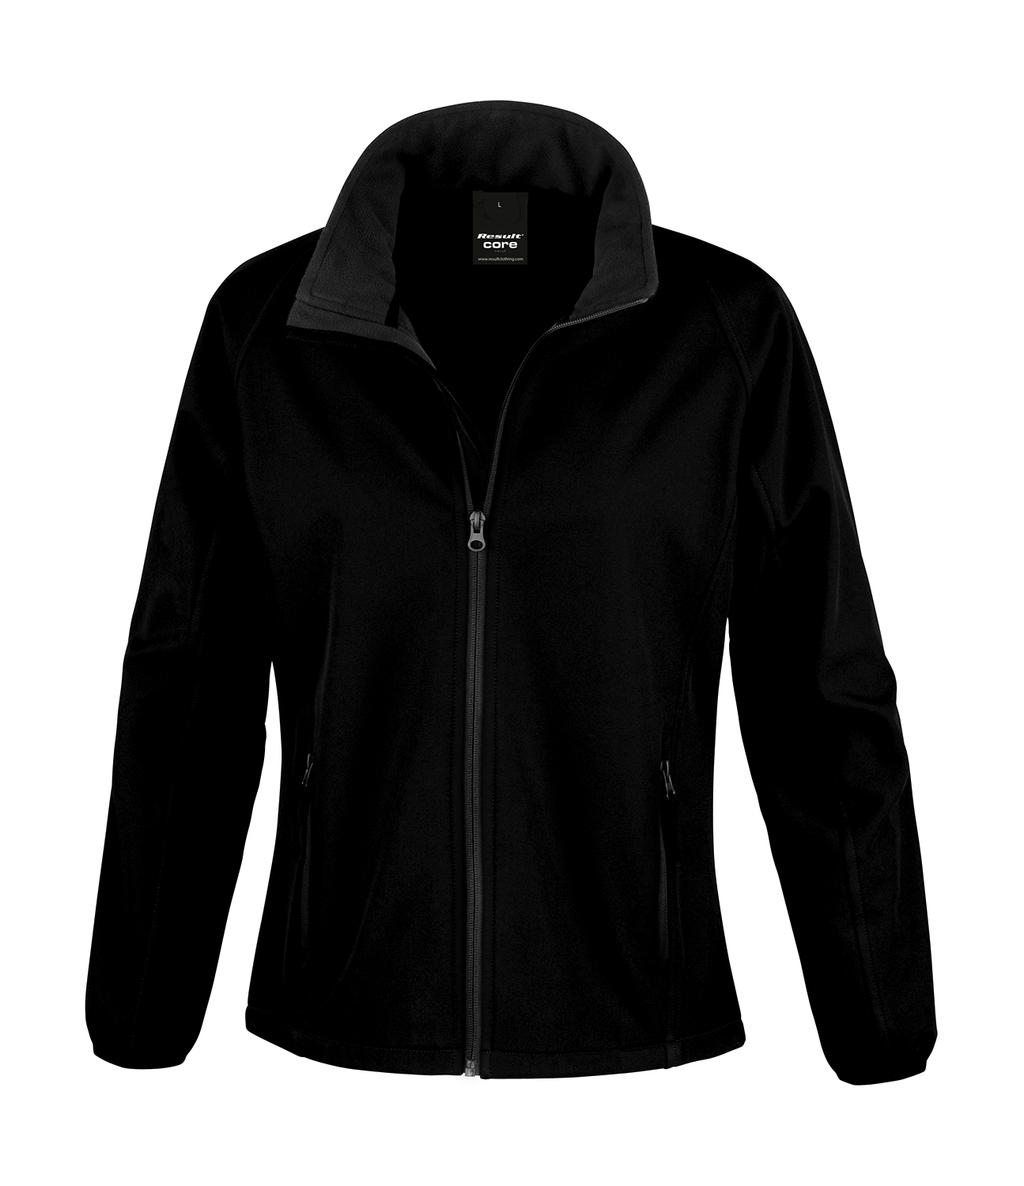  Ladies Printable Softshell Jacket in Farbe Black/Black